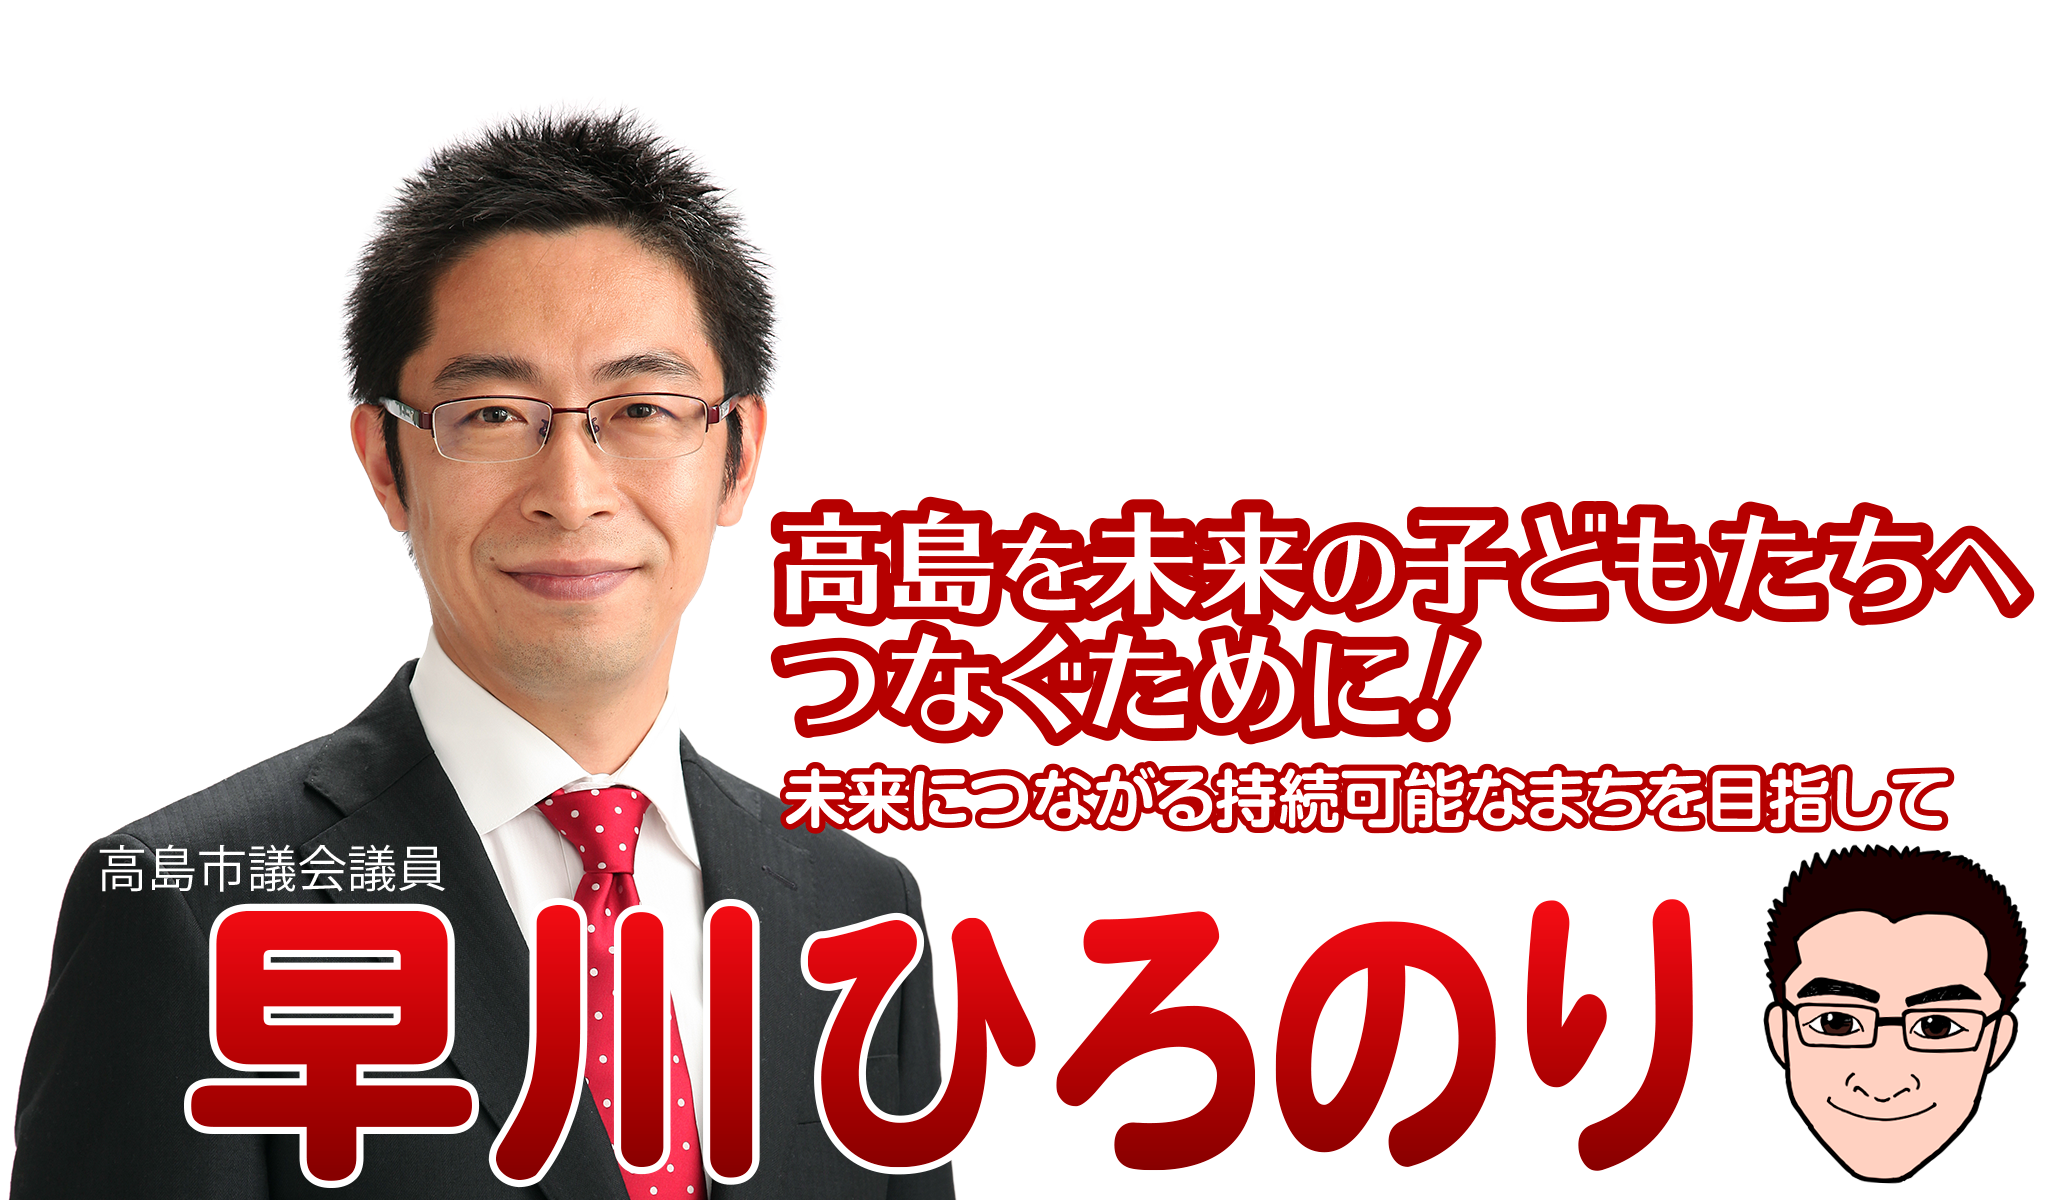 高島市議会議員「早川浩徳」高島を未来の子どもたちへつなぐために